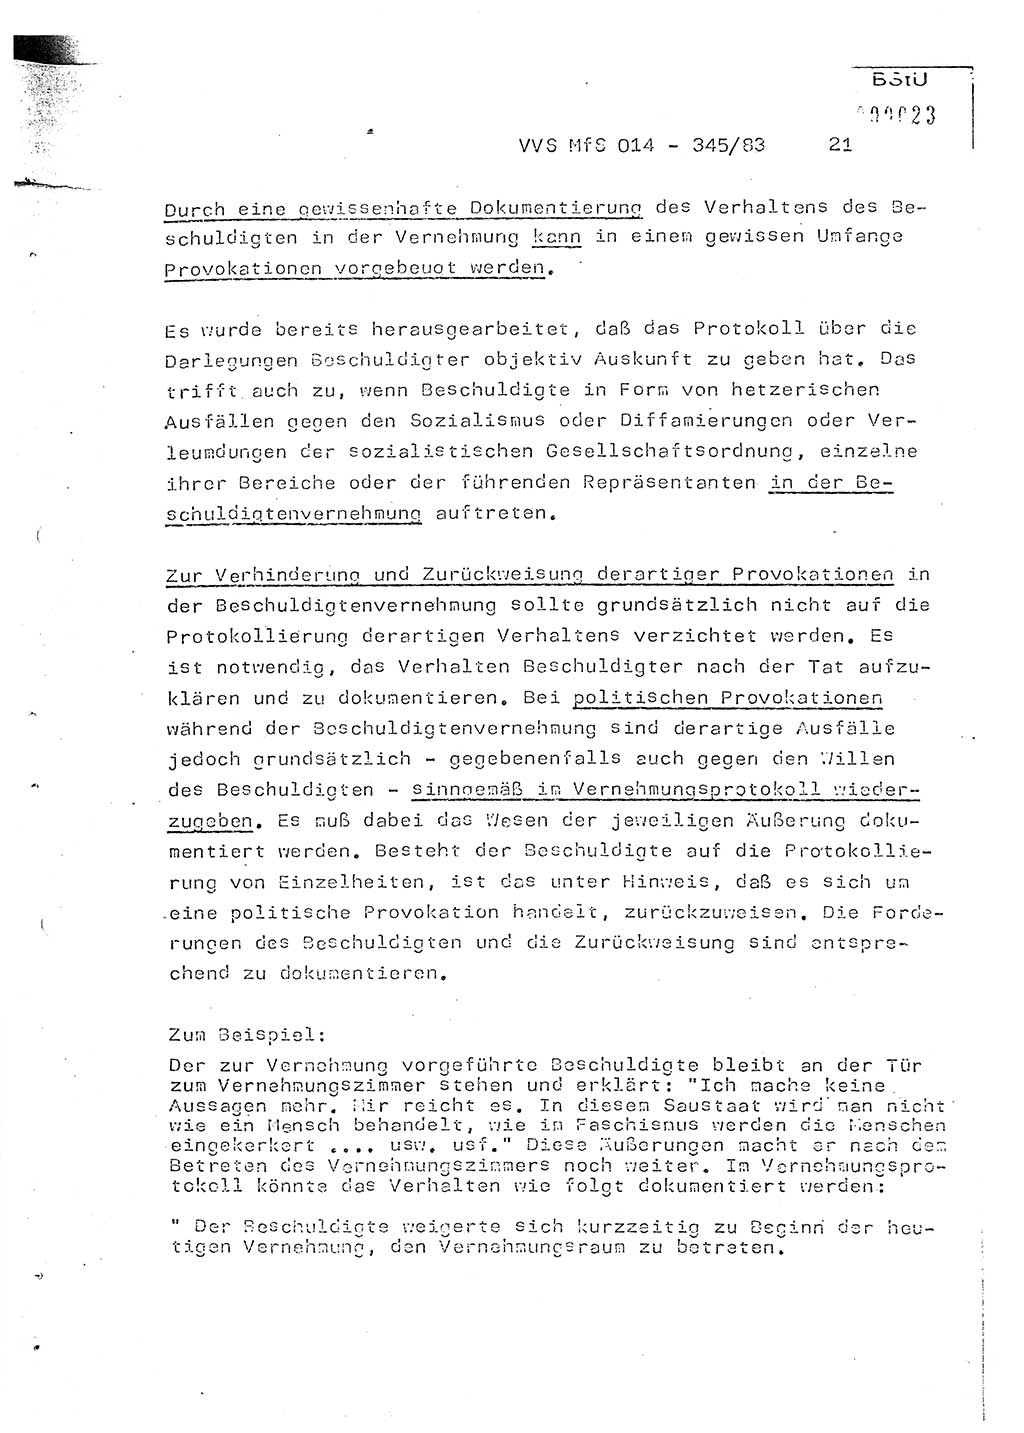 Lektion Ministerium für Staatssicherheit (MfS) [Deutsche Demokratische Republik (DDR)], Hauptabteilung (HA) Ⅸ, Vertrauliche Verschlußsache (VVS) o014-345/83, Berlin 1983, Seite 21 (Lekt. MfS DDR HA Ⅸ VVS o014-345/83 1983, S. 21)